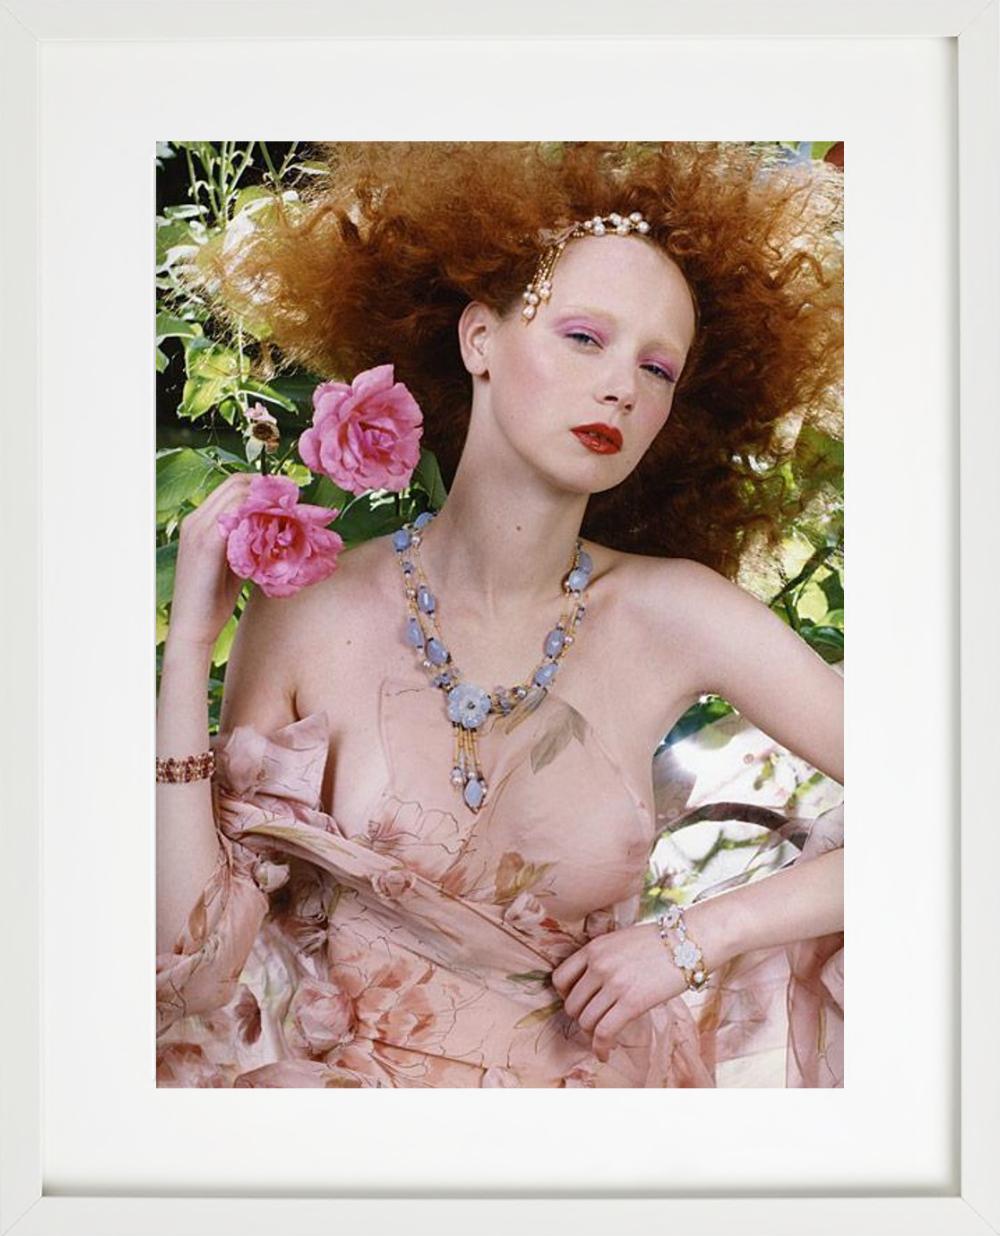 Rotes Haar #2 – halb-nacktes Porträt mit Blumen, Kunstfotografie, 2004 (Braun), Color Photograph, von Iris Brosch